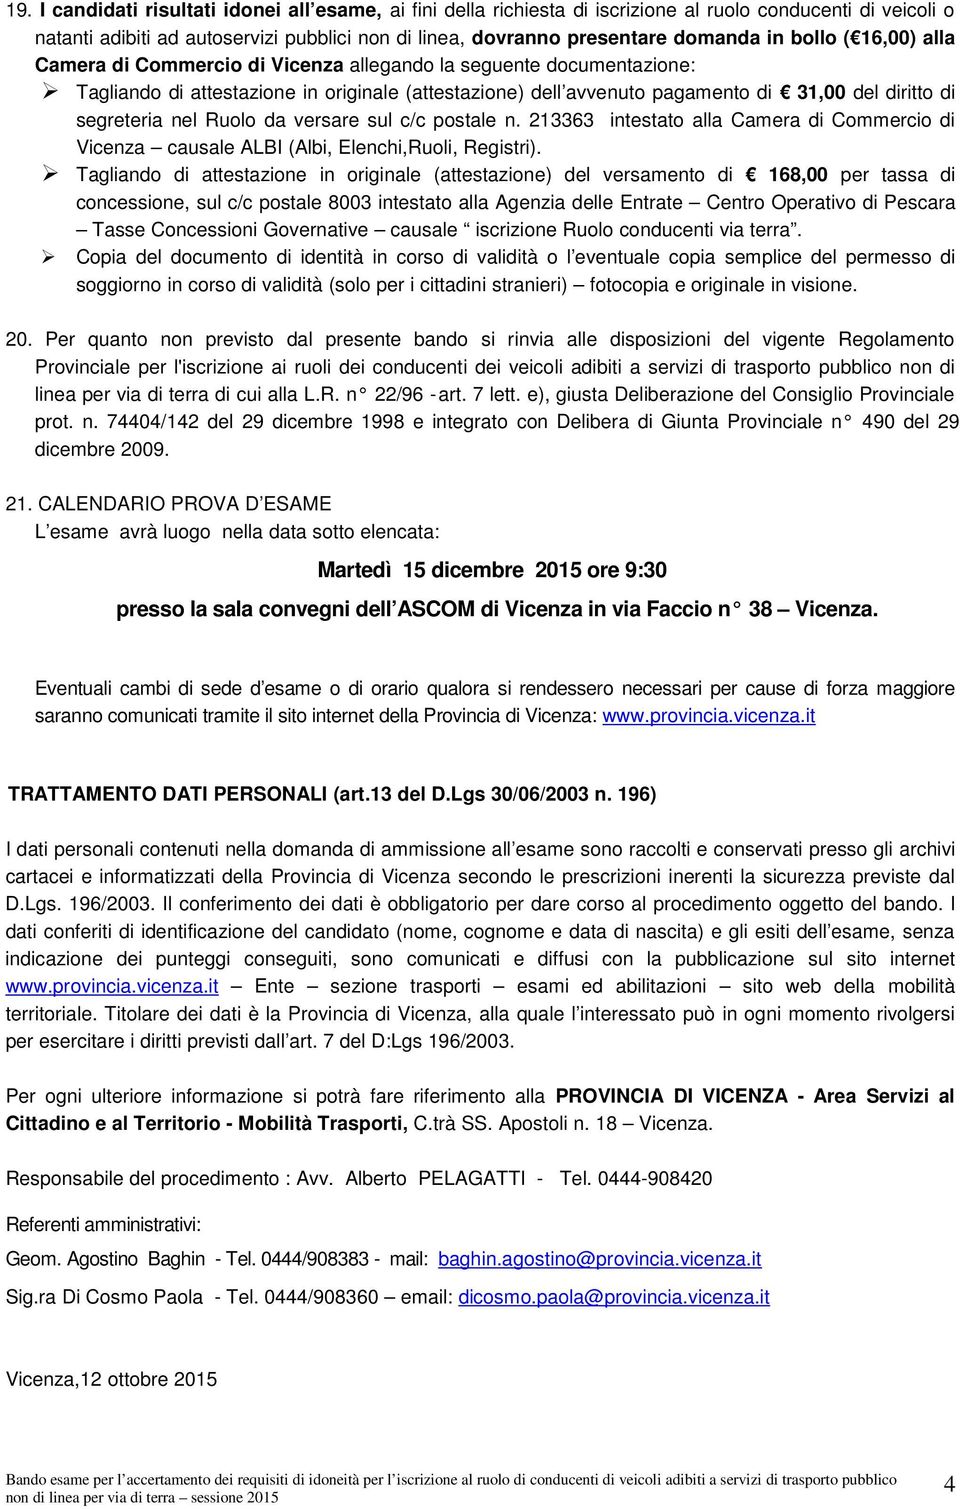 segreteria nel Ruolo da versare sul c/c postale n. 213363 intestato alla Camera di Commercio di Vicenza causale ALBI (Albi, Elenchi,Ruoli, Registri).